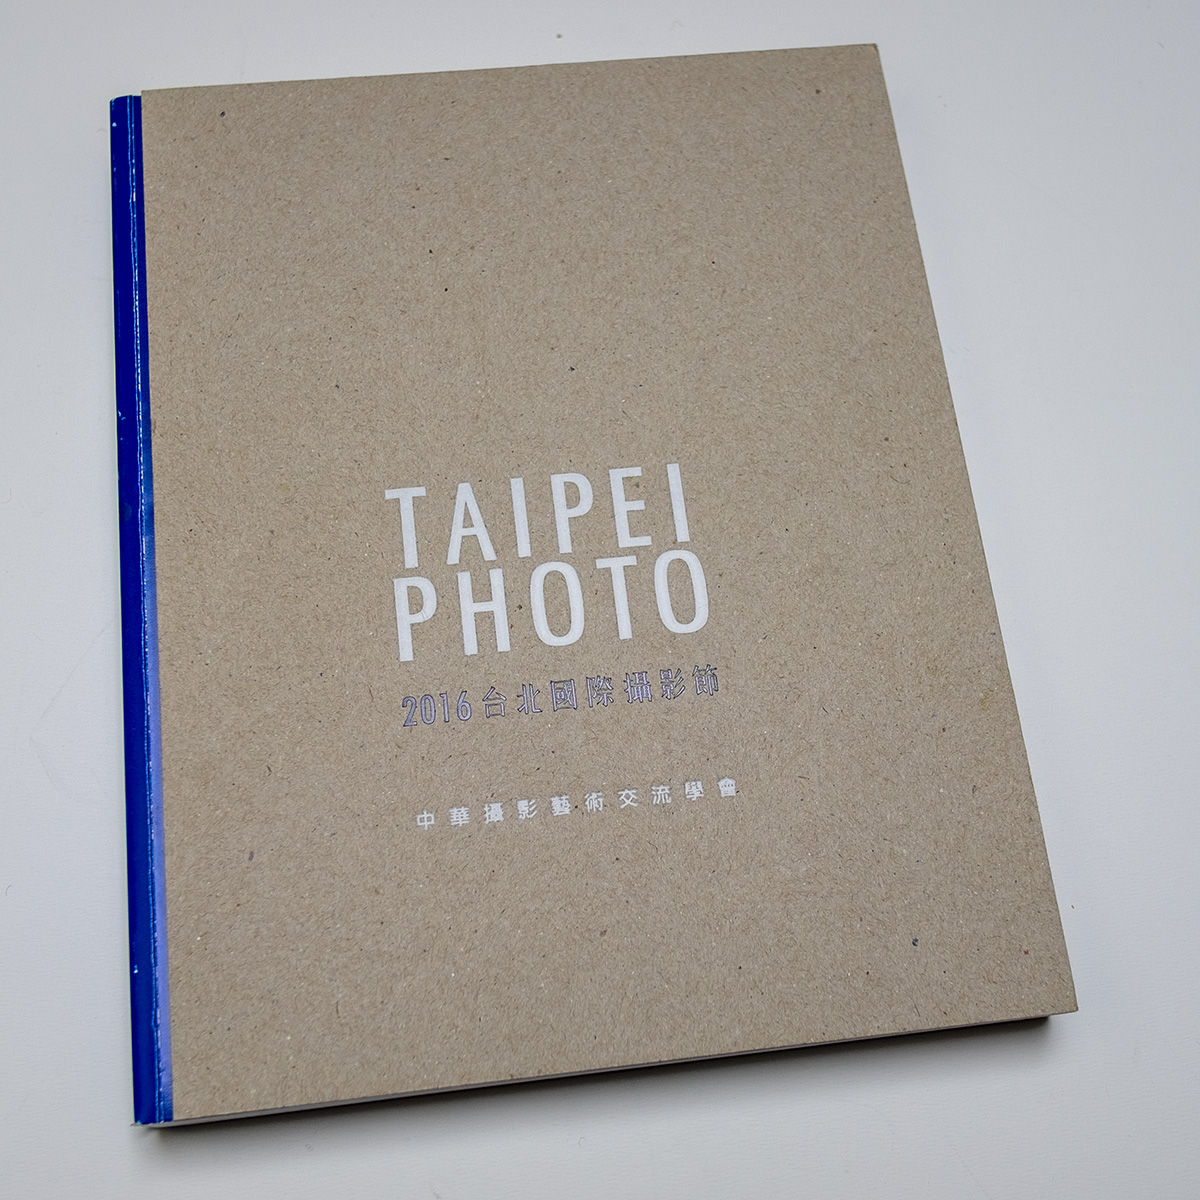 Taipei Photo 2016 catalogue expo 8727